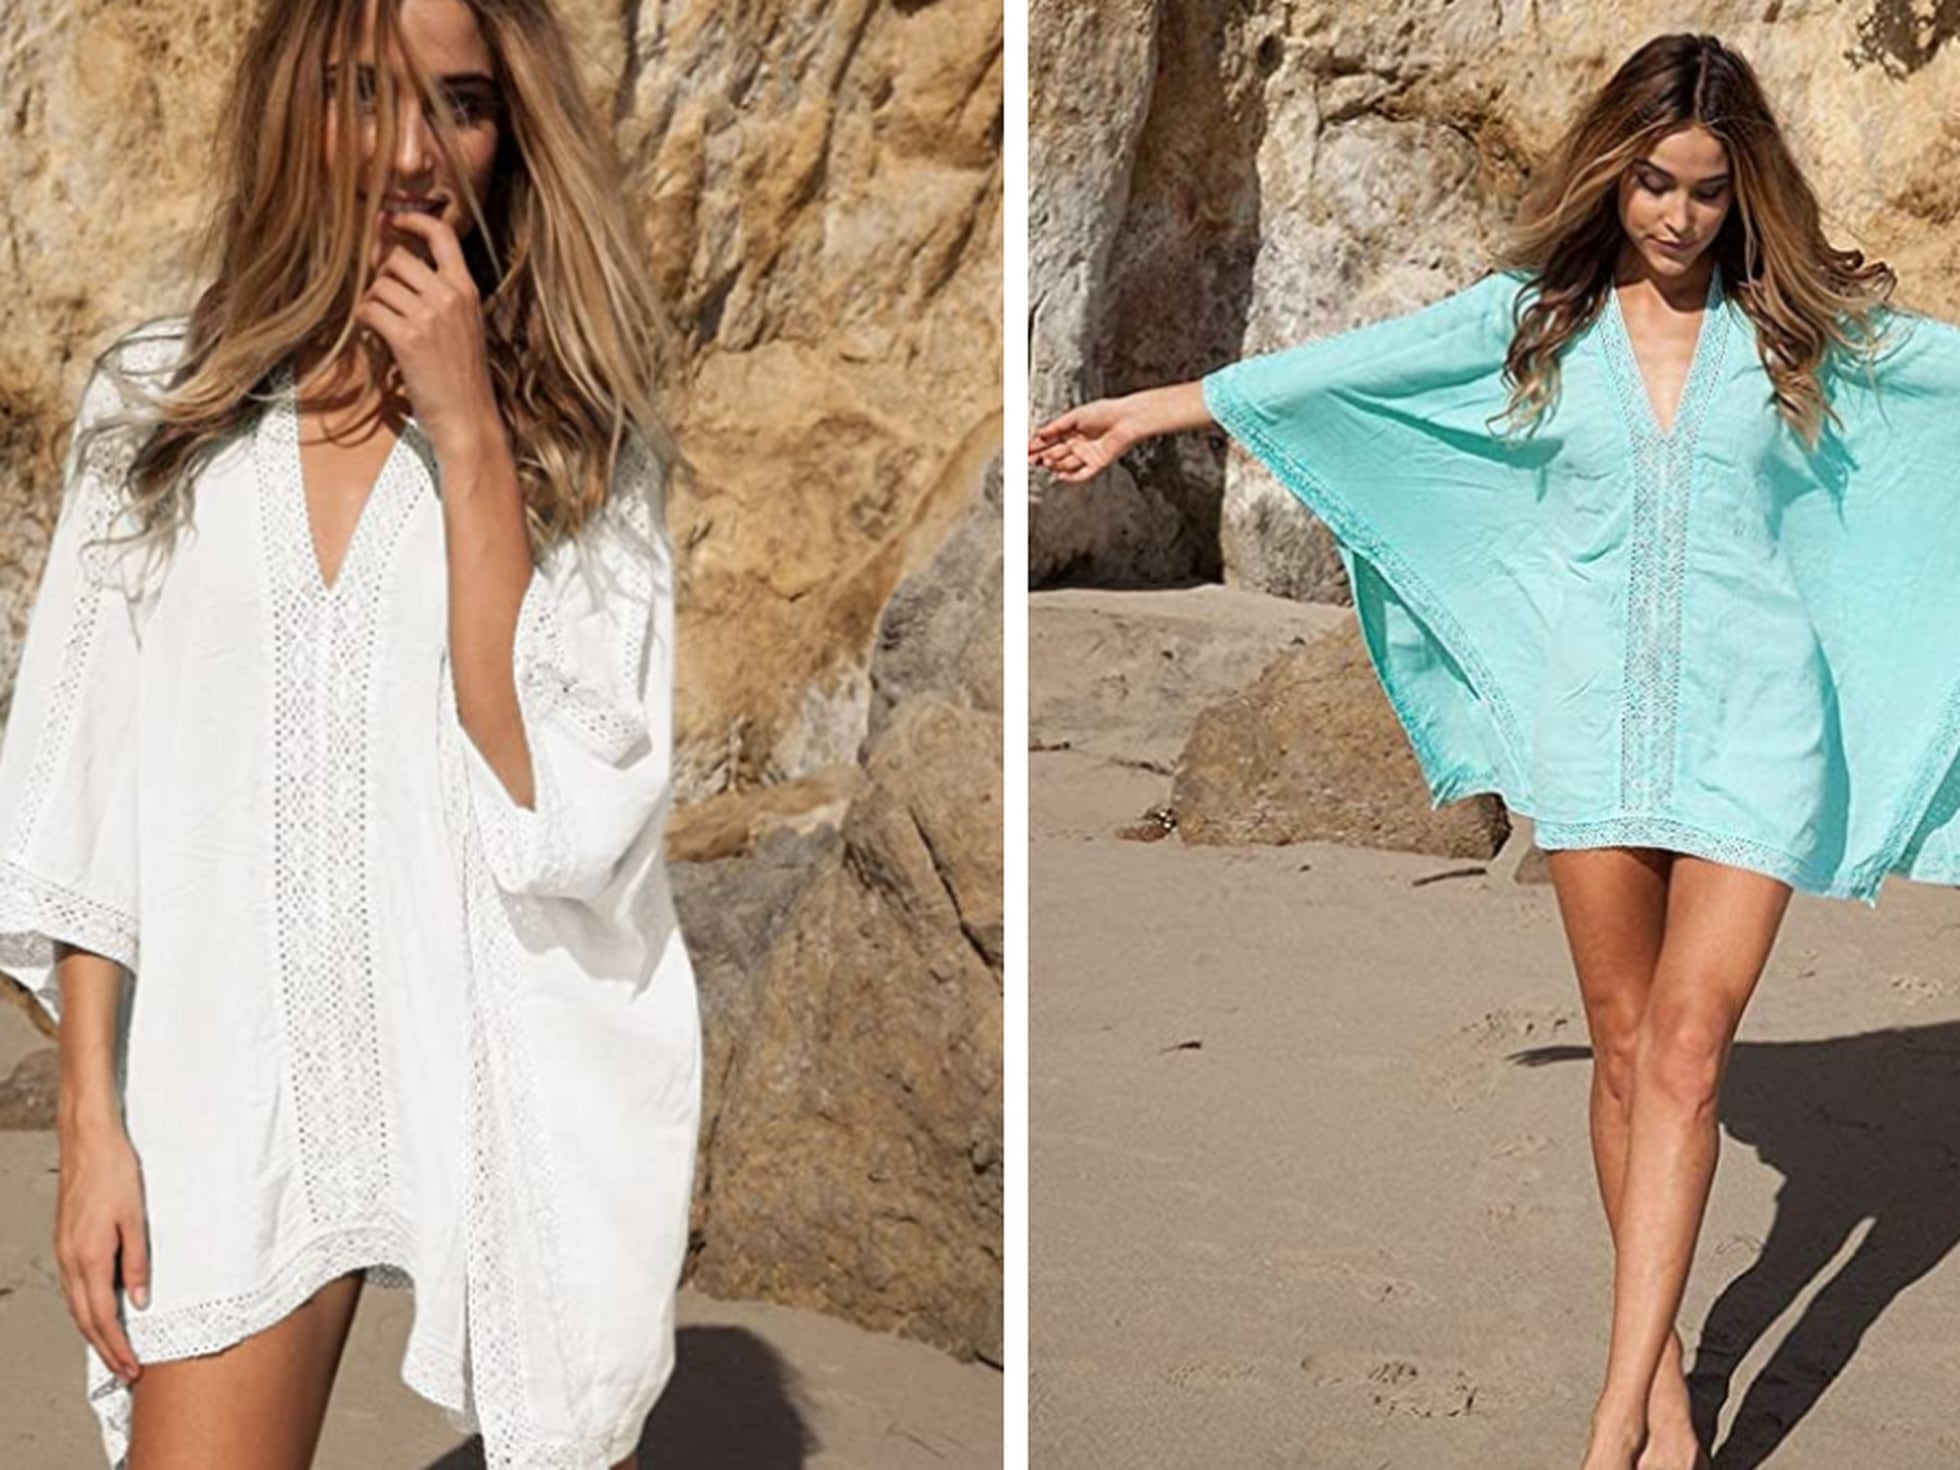 En seis colores y de corte holgado: así es el vestido de playa más vendido Amazon que se adapta a distintas tallas | Escaparate | EL PAÍS